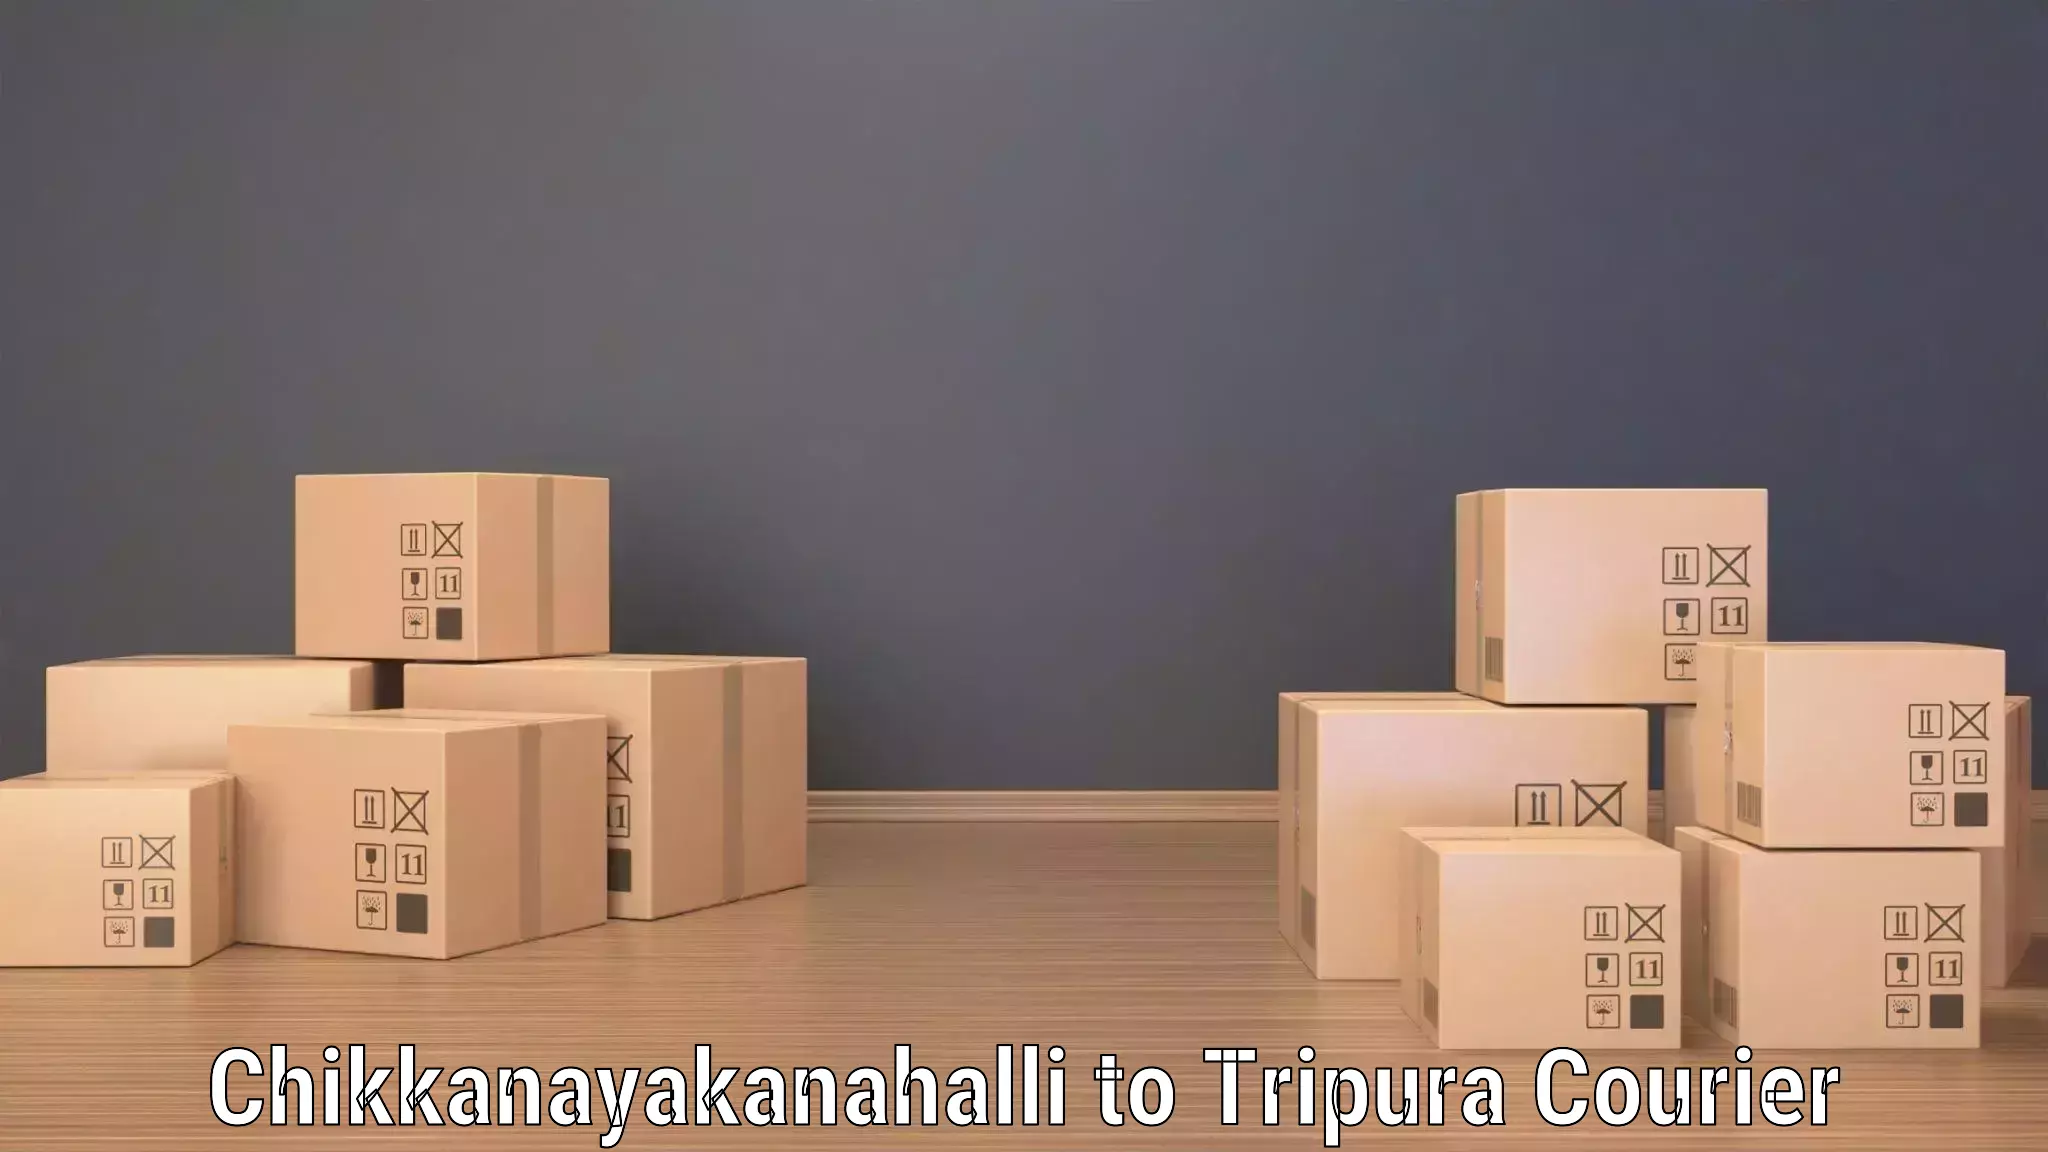 Professional courier handling Chikkanayakanahalli to Tripura